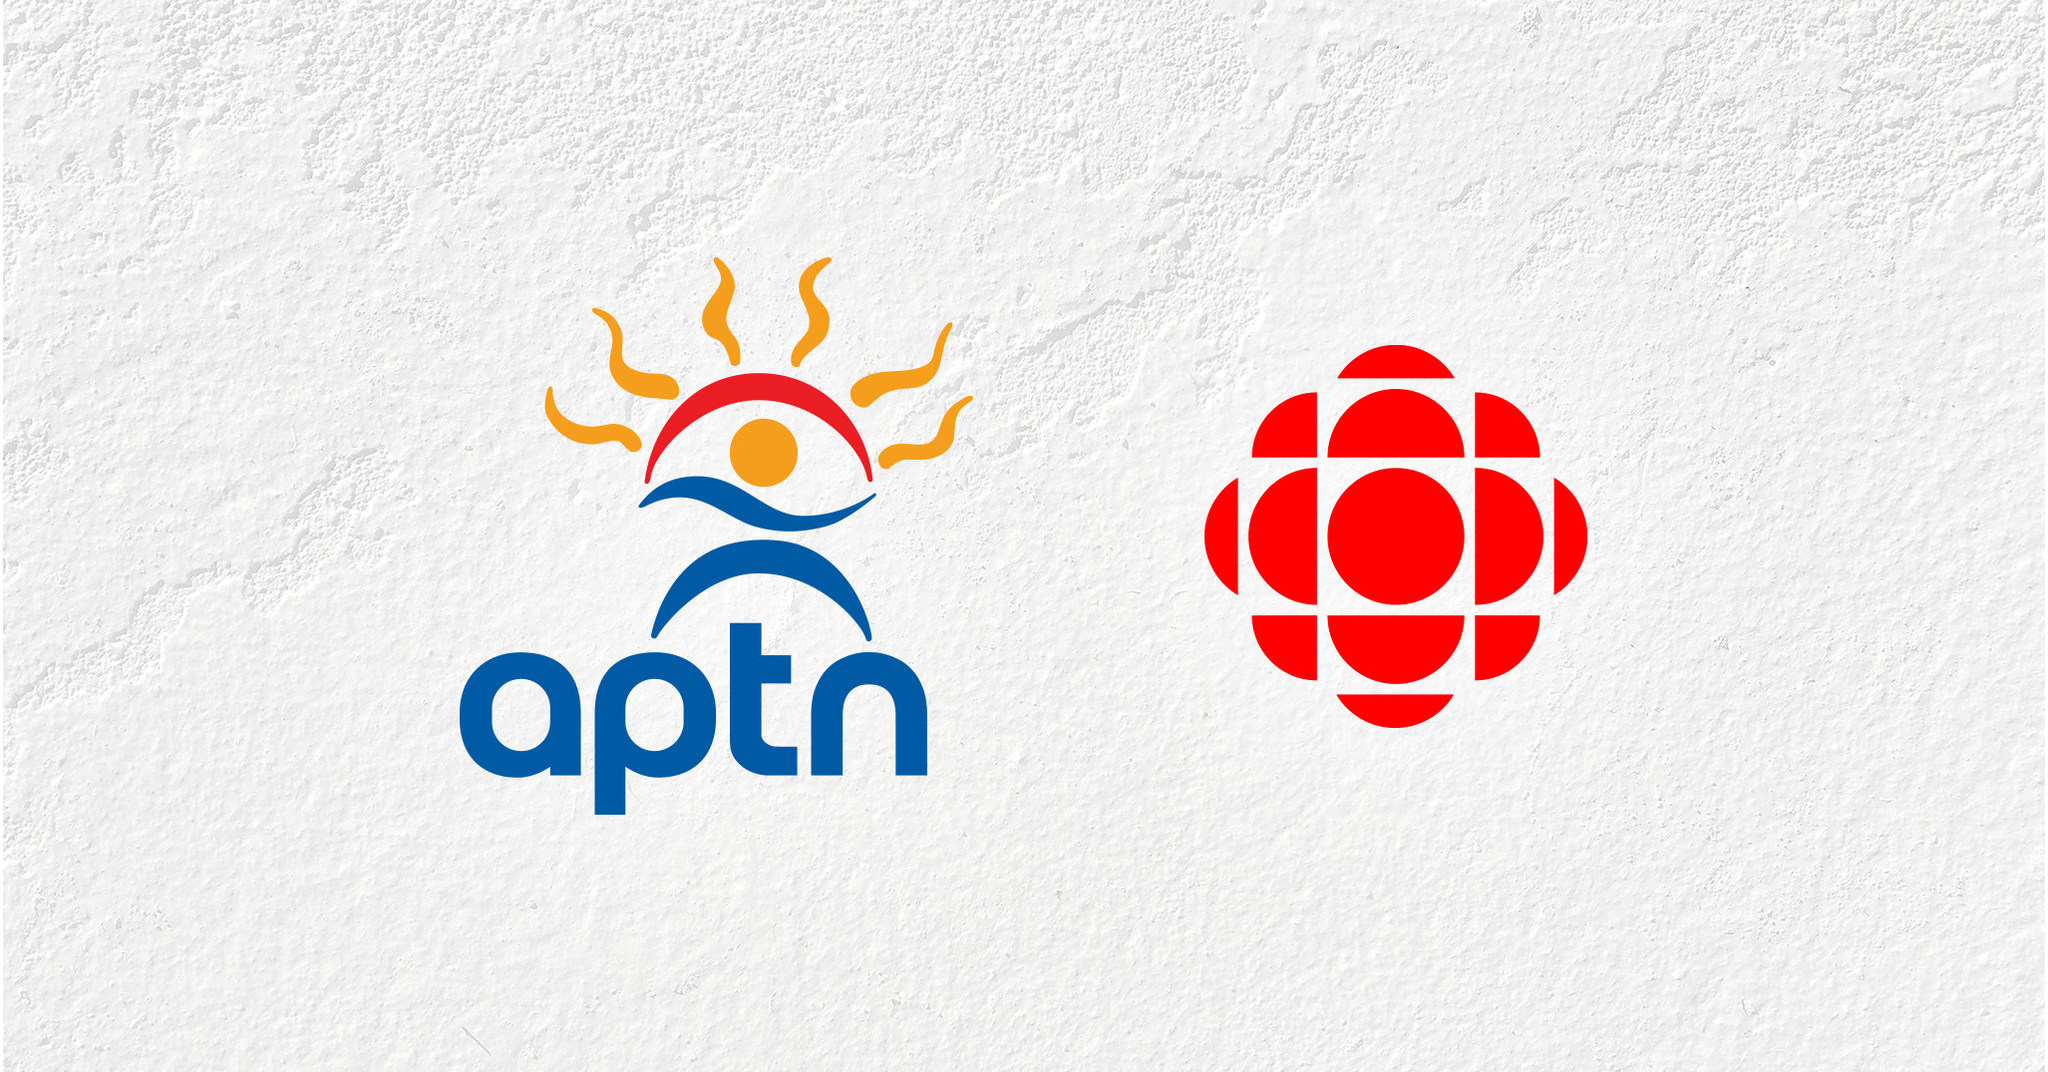 تتعاون APTN و CBC / Radio-Canada بشكل أوثق في إنشاء المحتوى الخاص بالسكان الأصليين